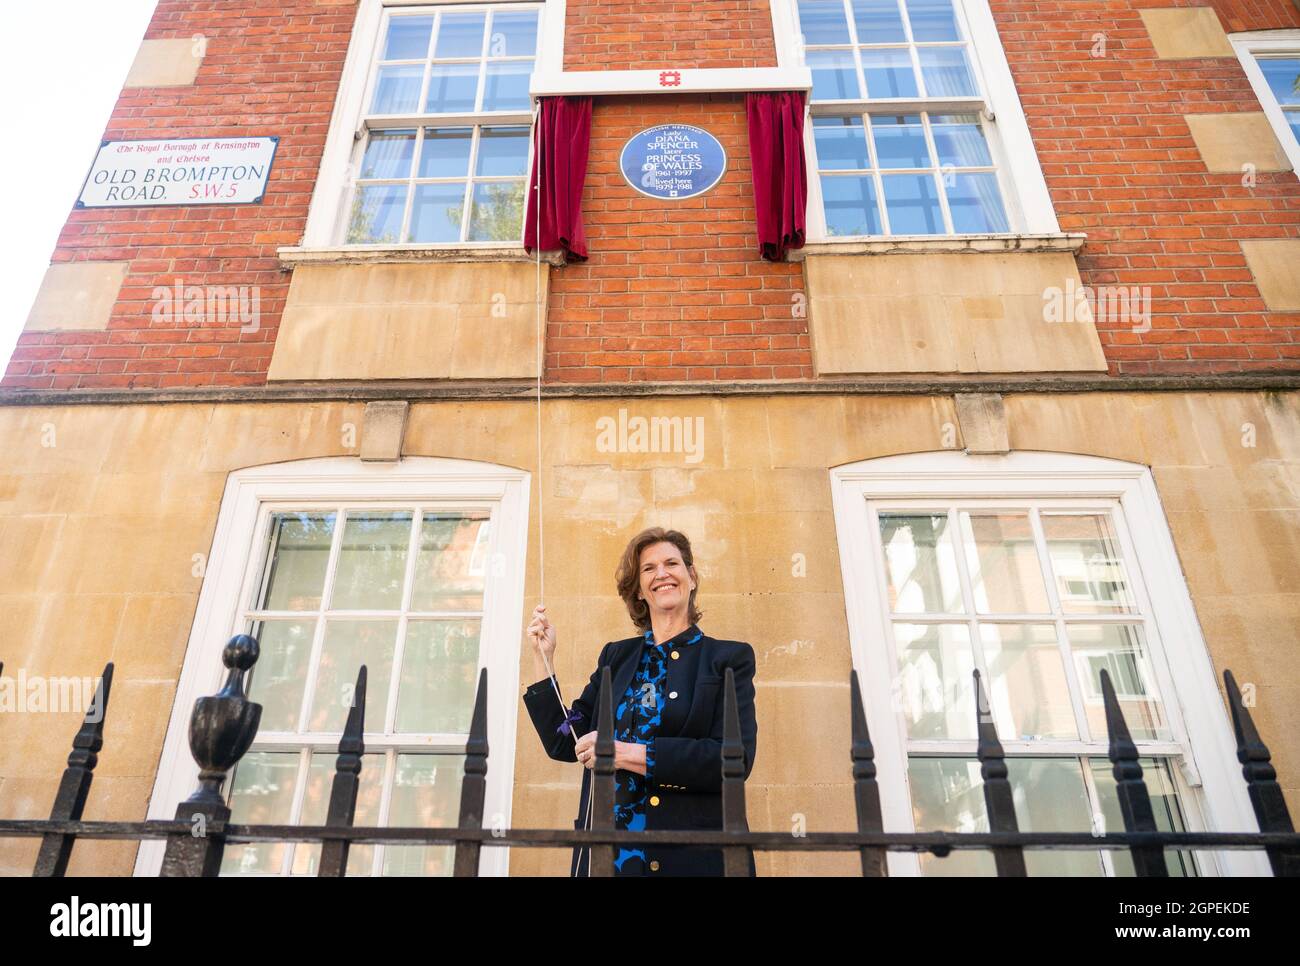 L'ancienne platte de la princesse Diana, Virginia Clarke, dévoile une plaque bleue du patrimoine anglais à Diana, princesse du pays de Galles, à l'extérieur de la cour de Coleherne, Old Brompton Road, Londres. Date de la photo: Mercredi 29 septembre 2021. Banque D'Images